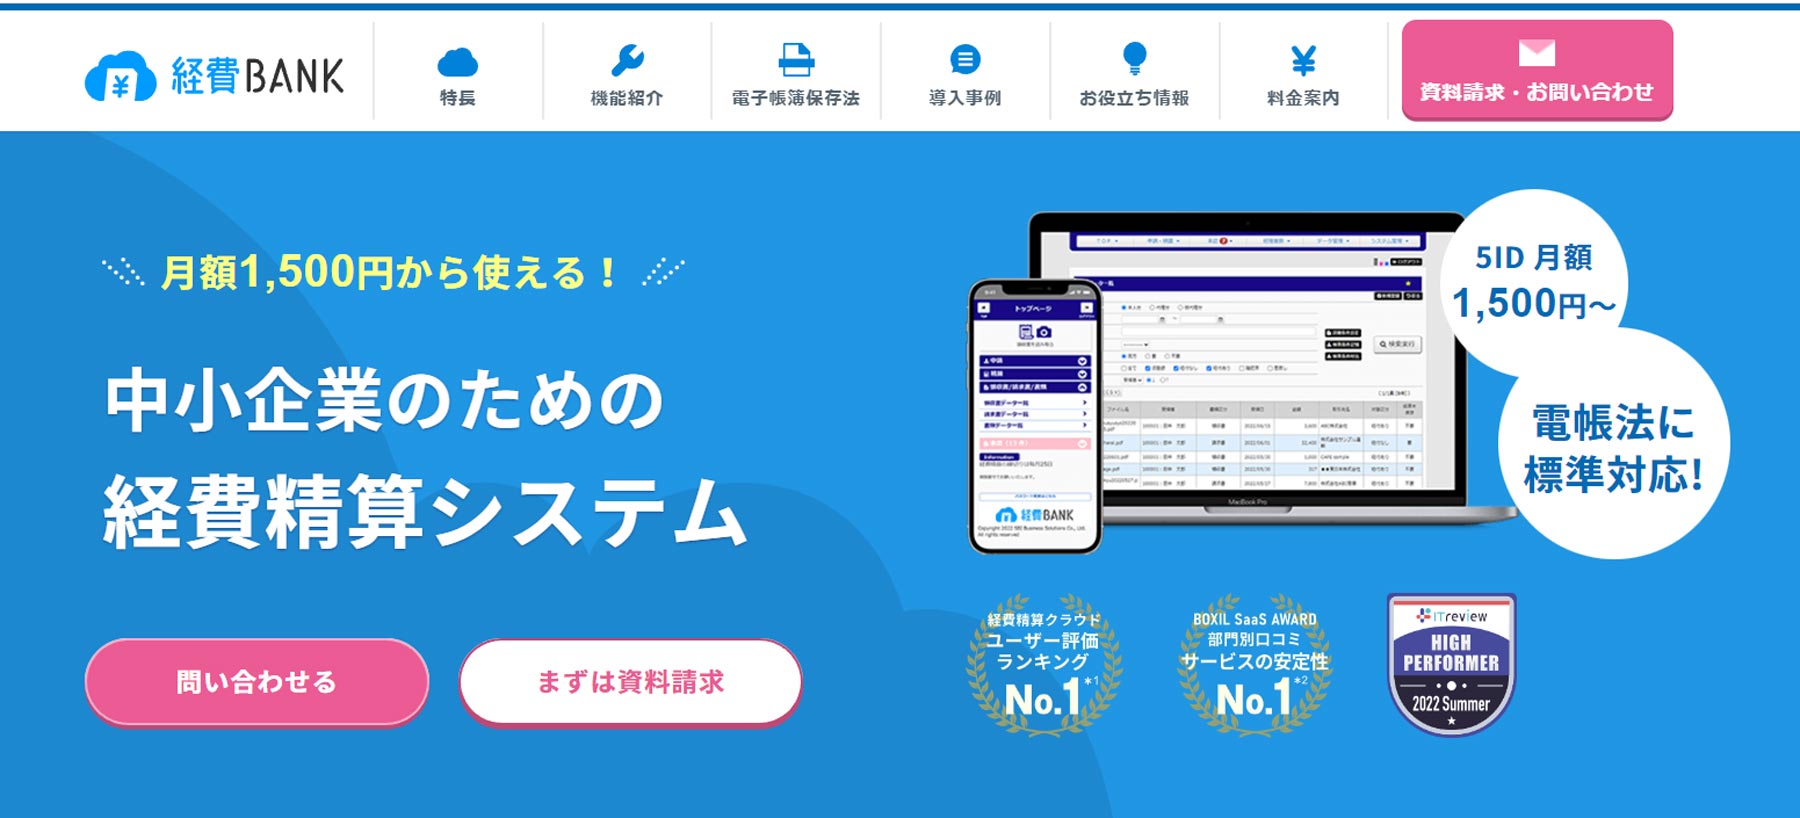 経費BANK公式Webサイト